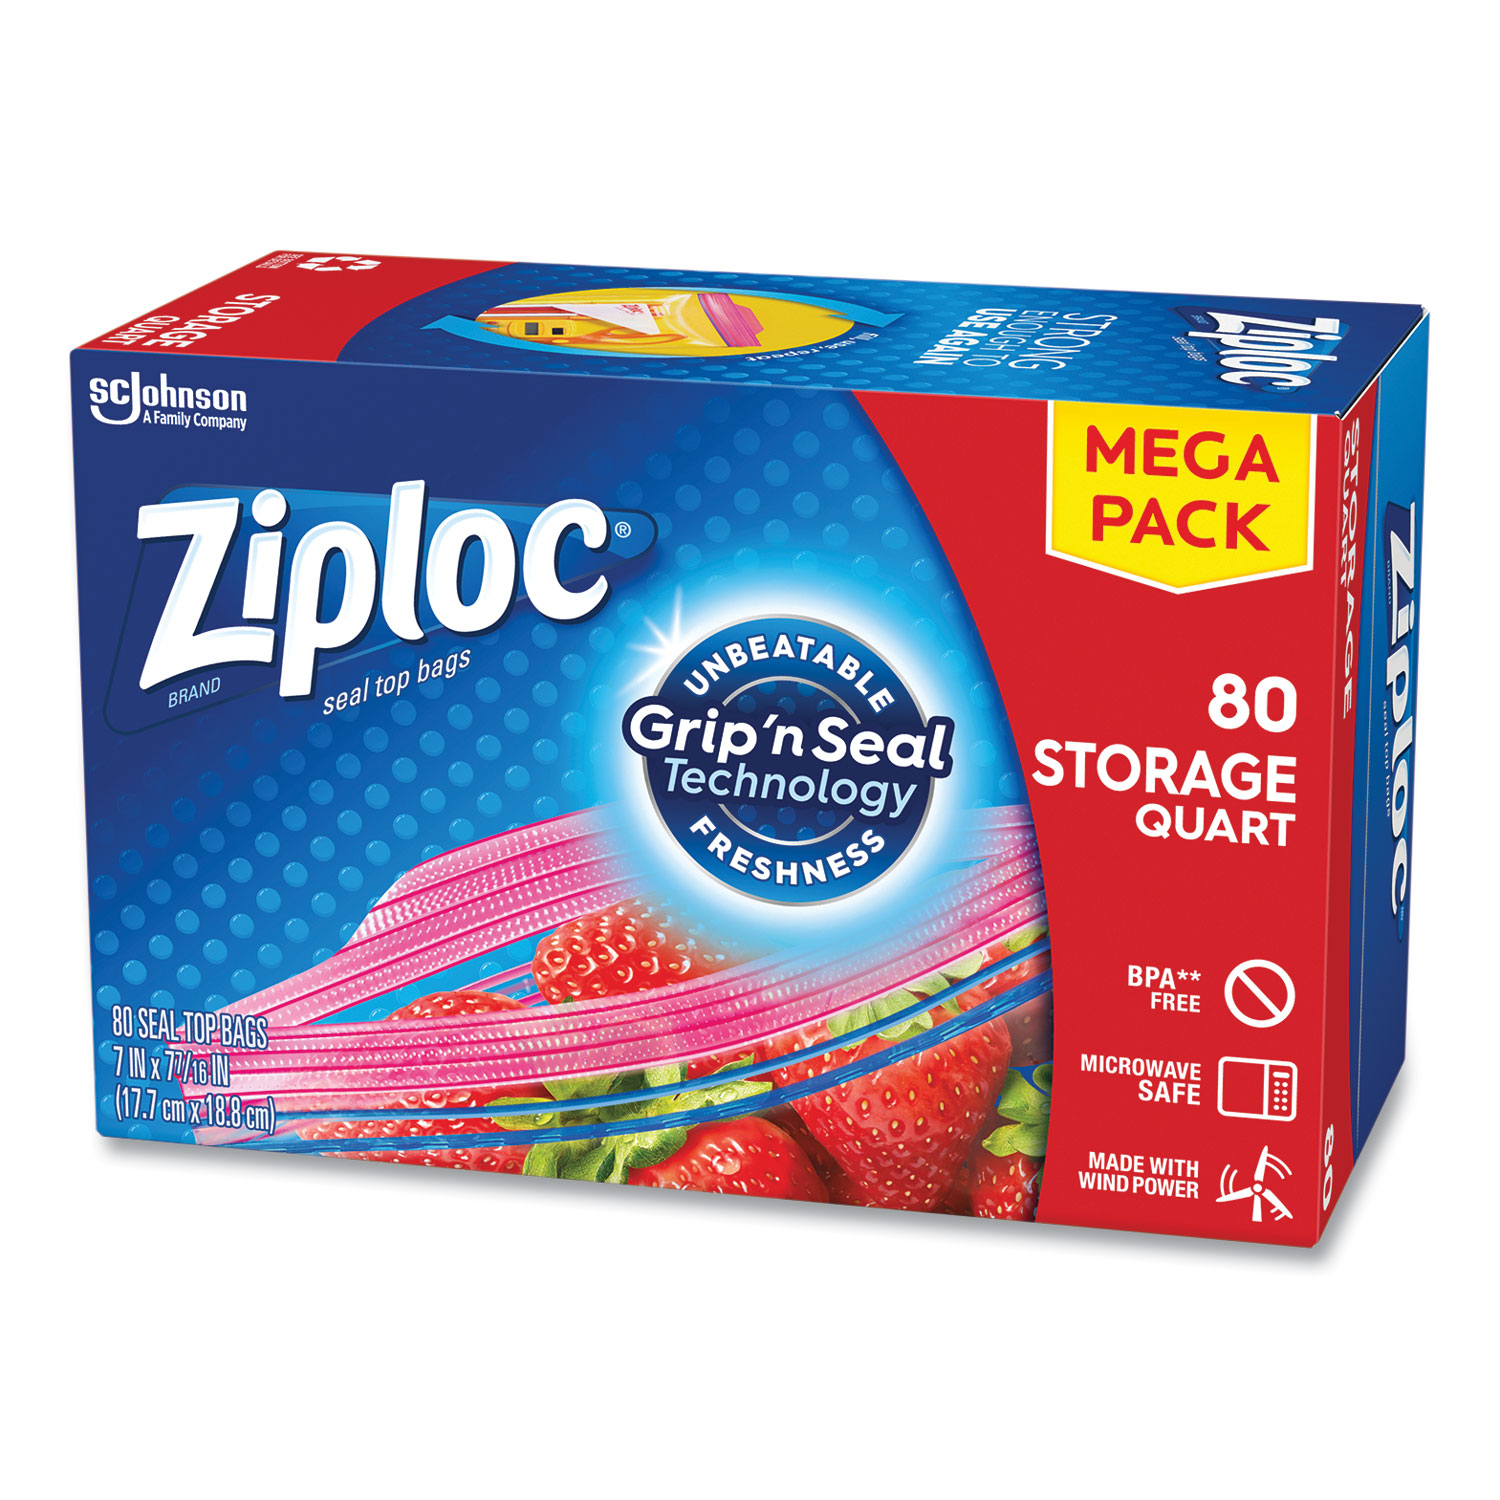 Ziploc Seal Top Sandwich Bags Quart Size 24 Count 